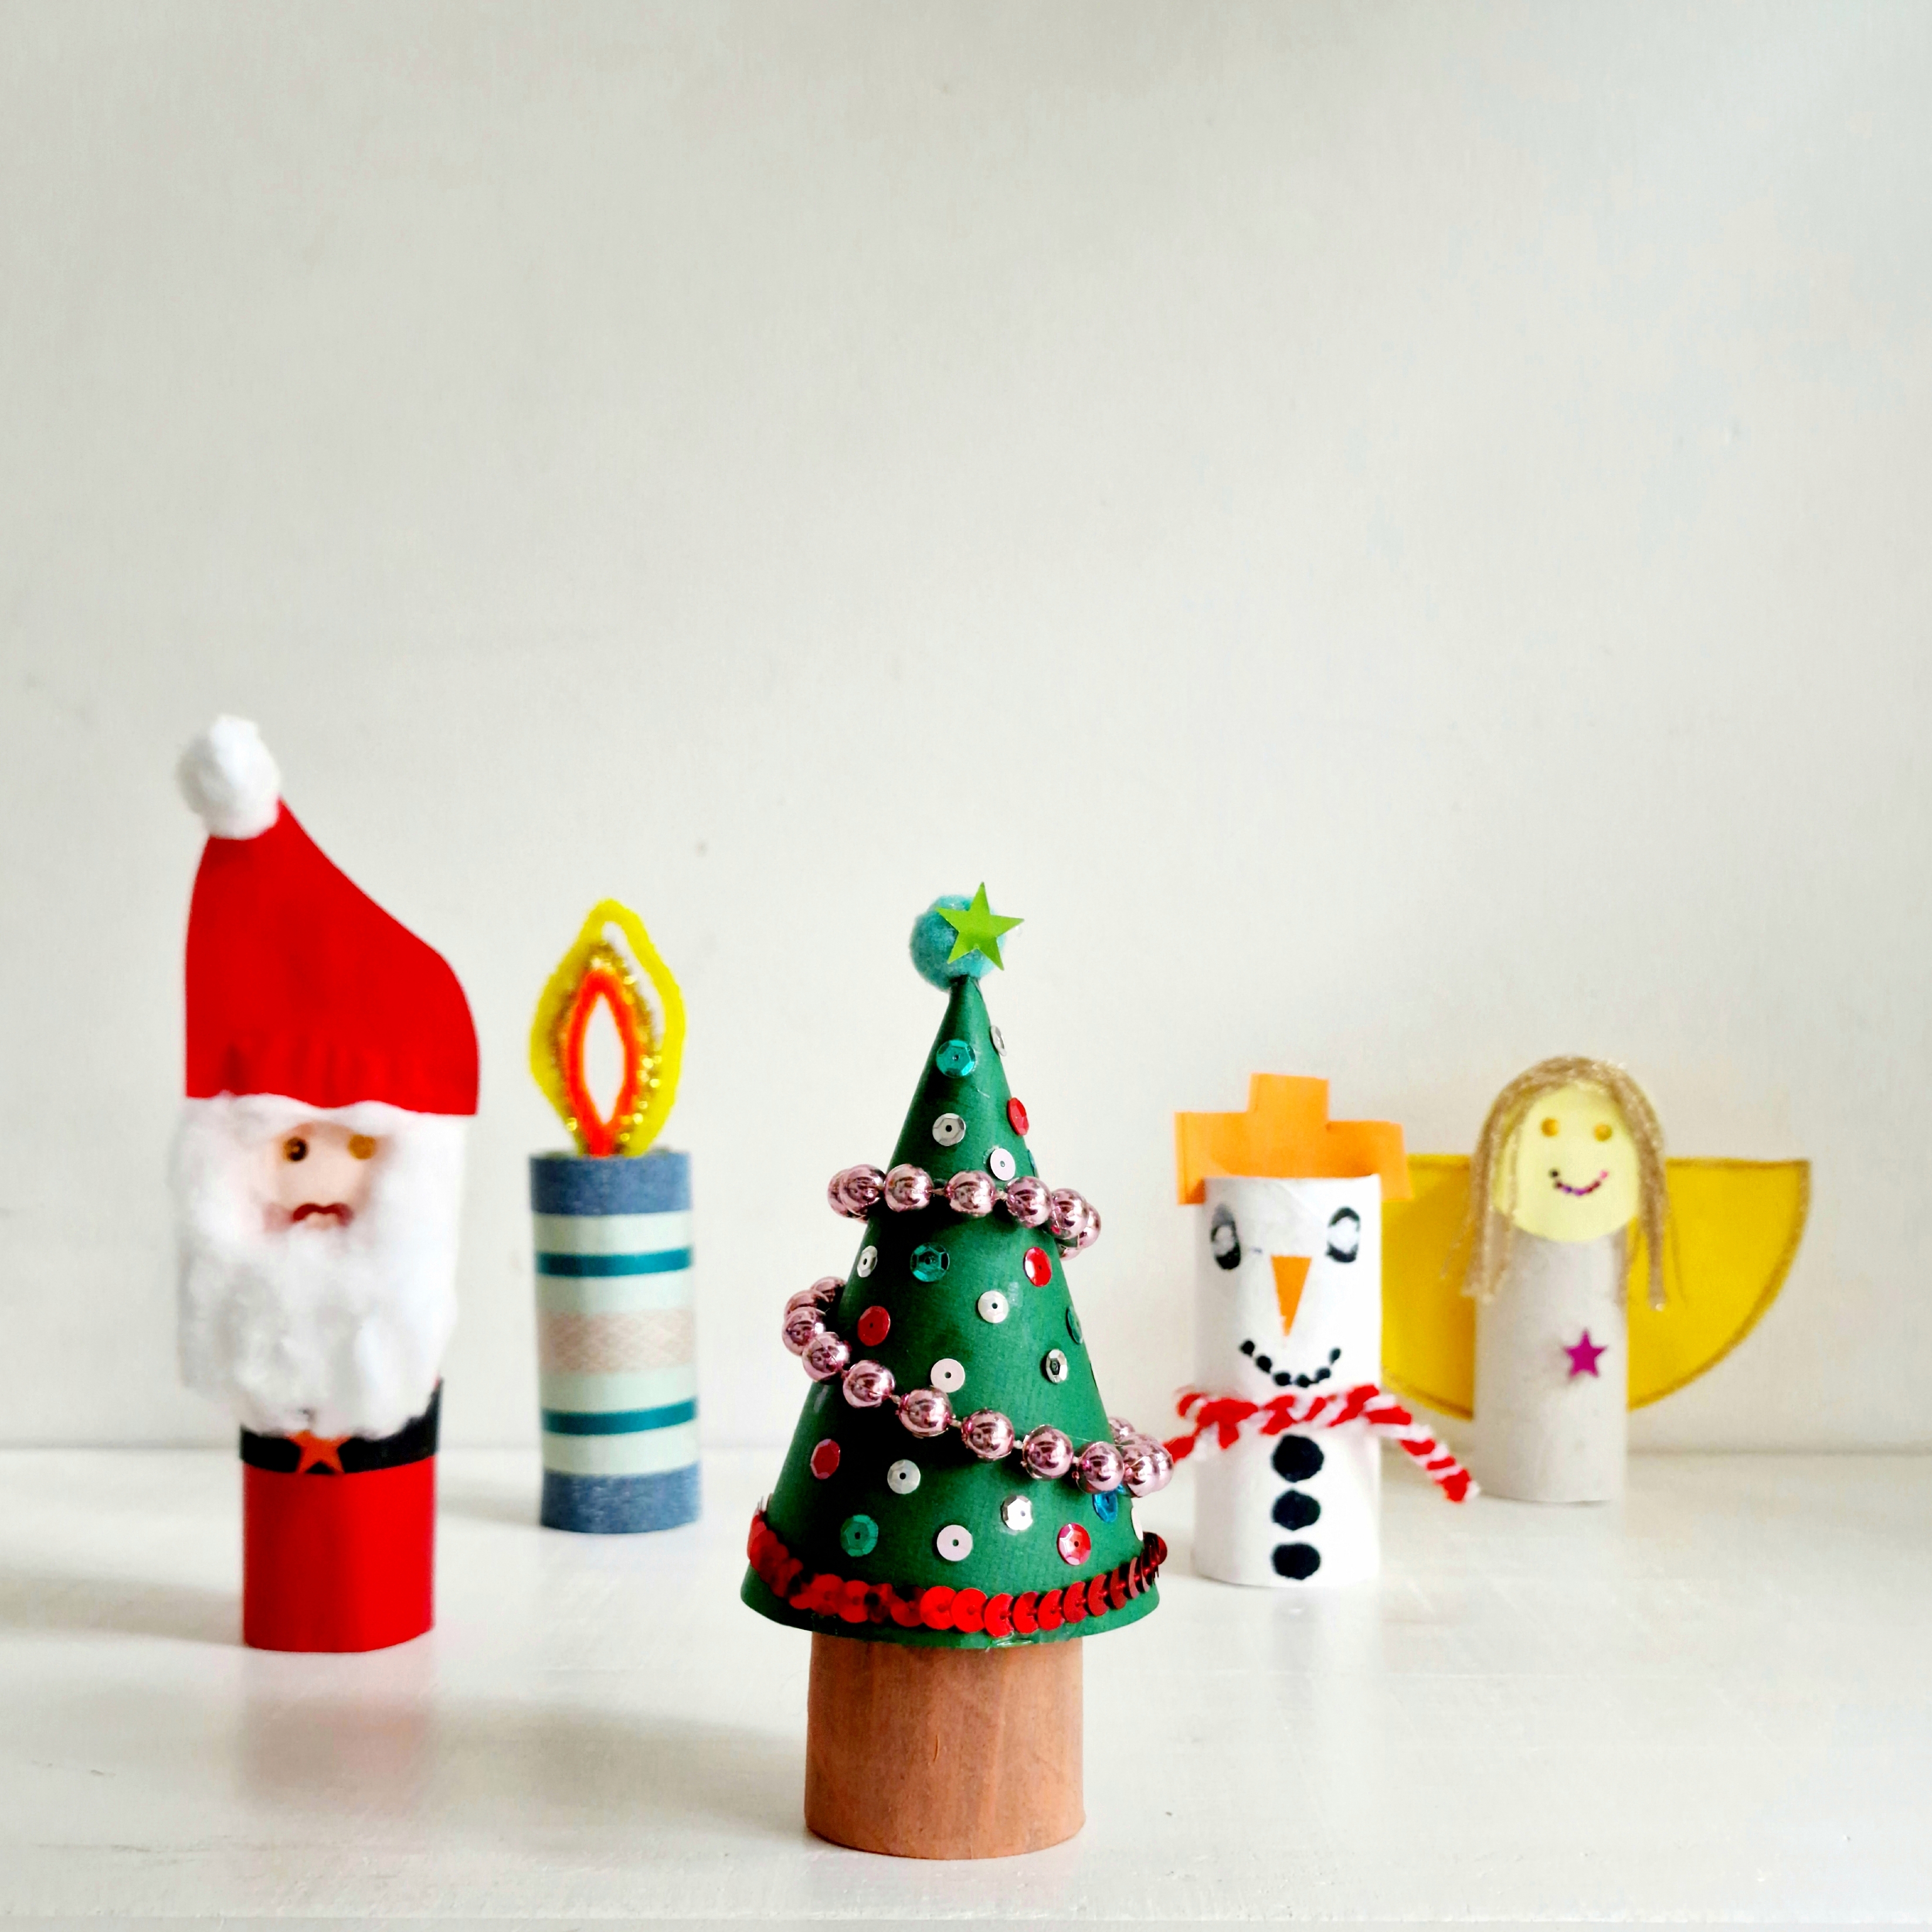 Nog meer kerst knutselen met wc rollen: een kerstman, kaars, kerstboom, sneeuwpop en engel.